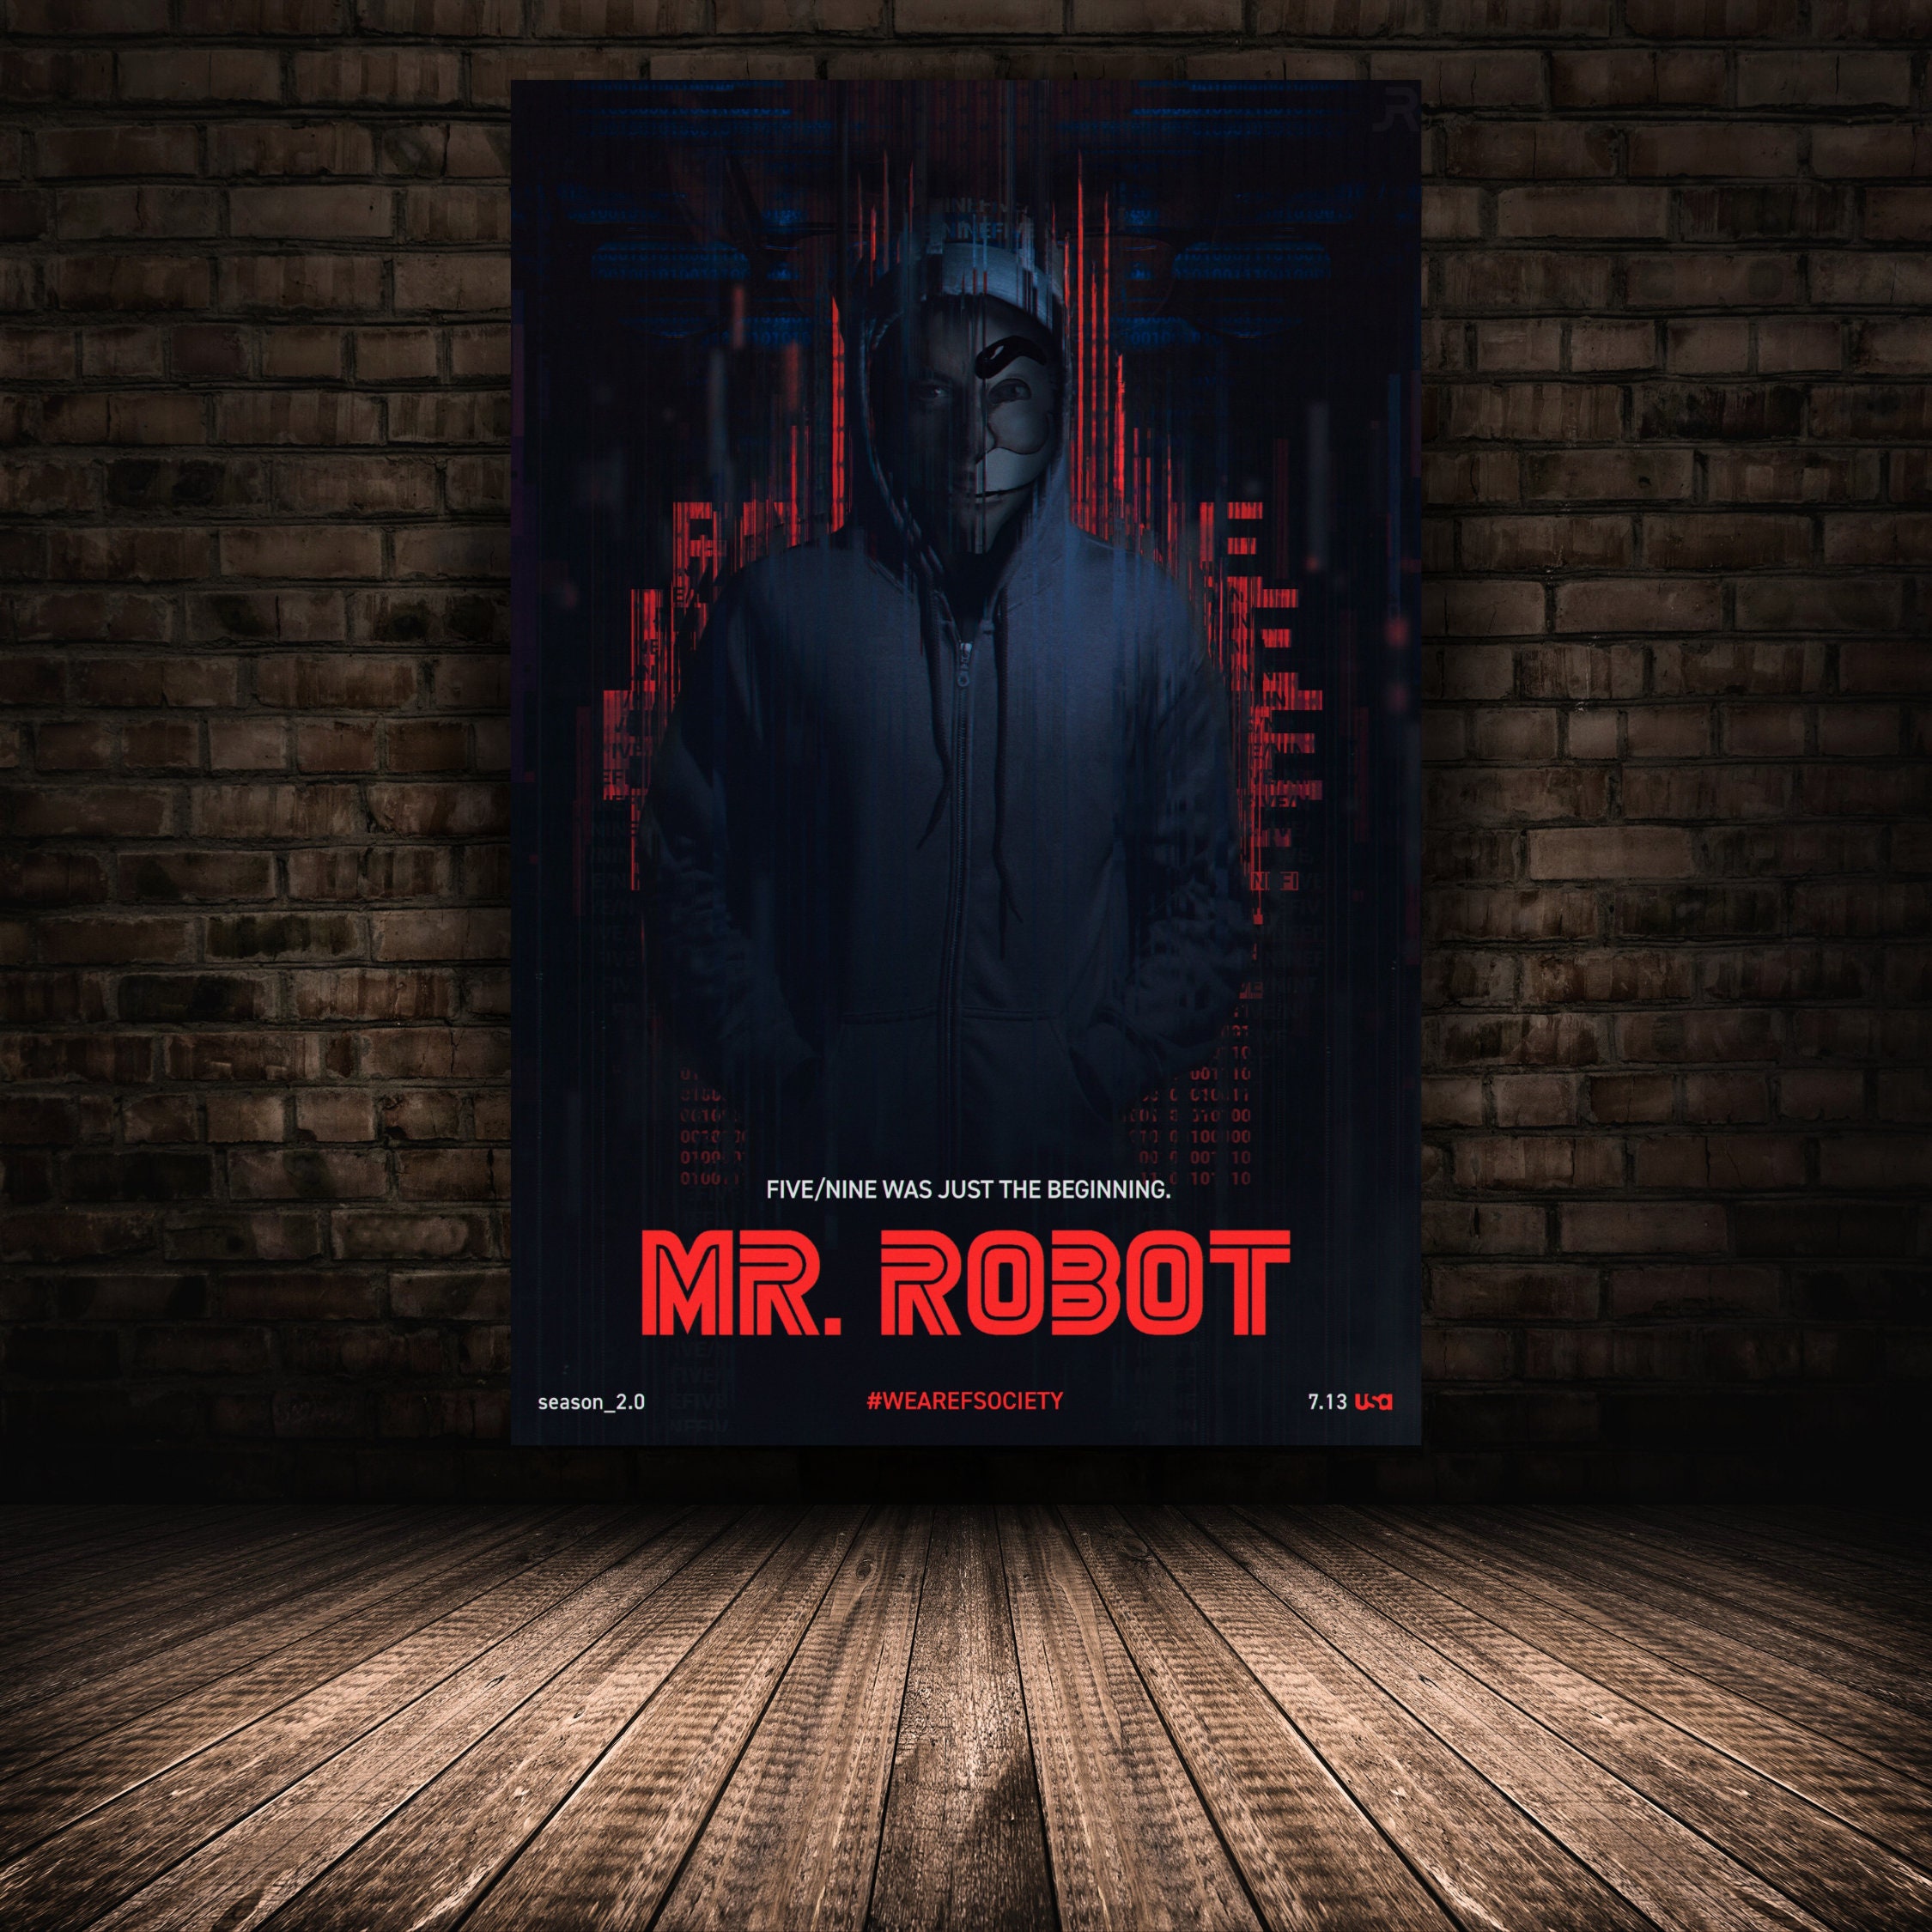 Mr Robot Bar Poster, Tv Show Mr Robot, Hacker Mr Robot